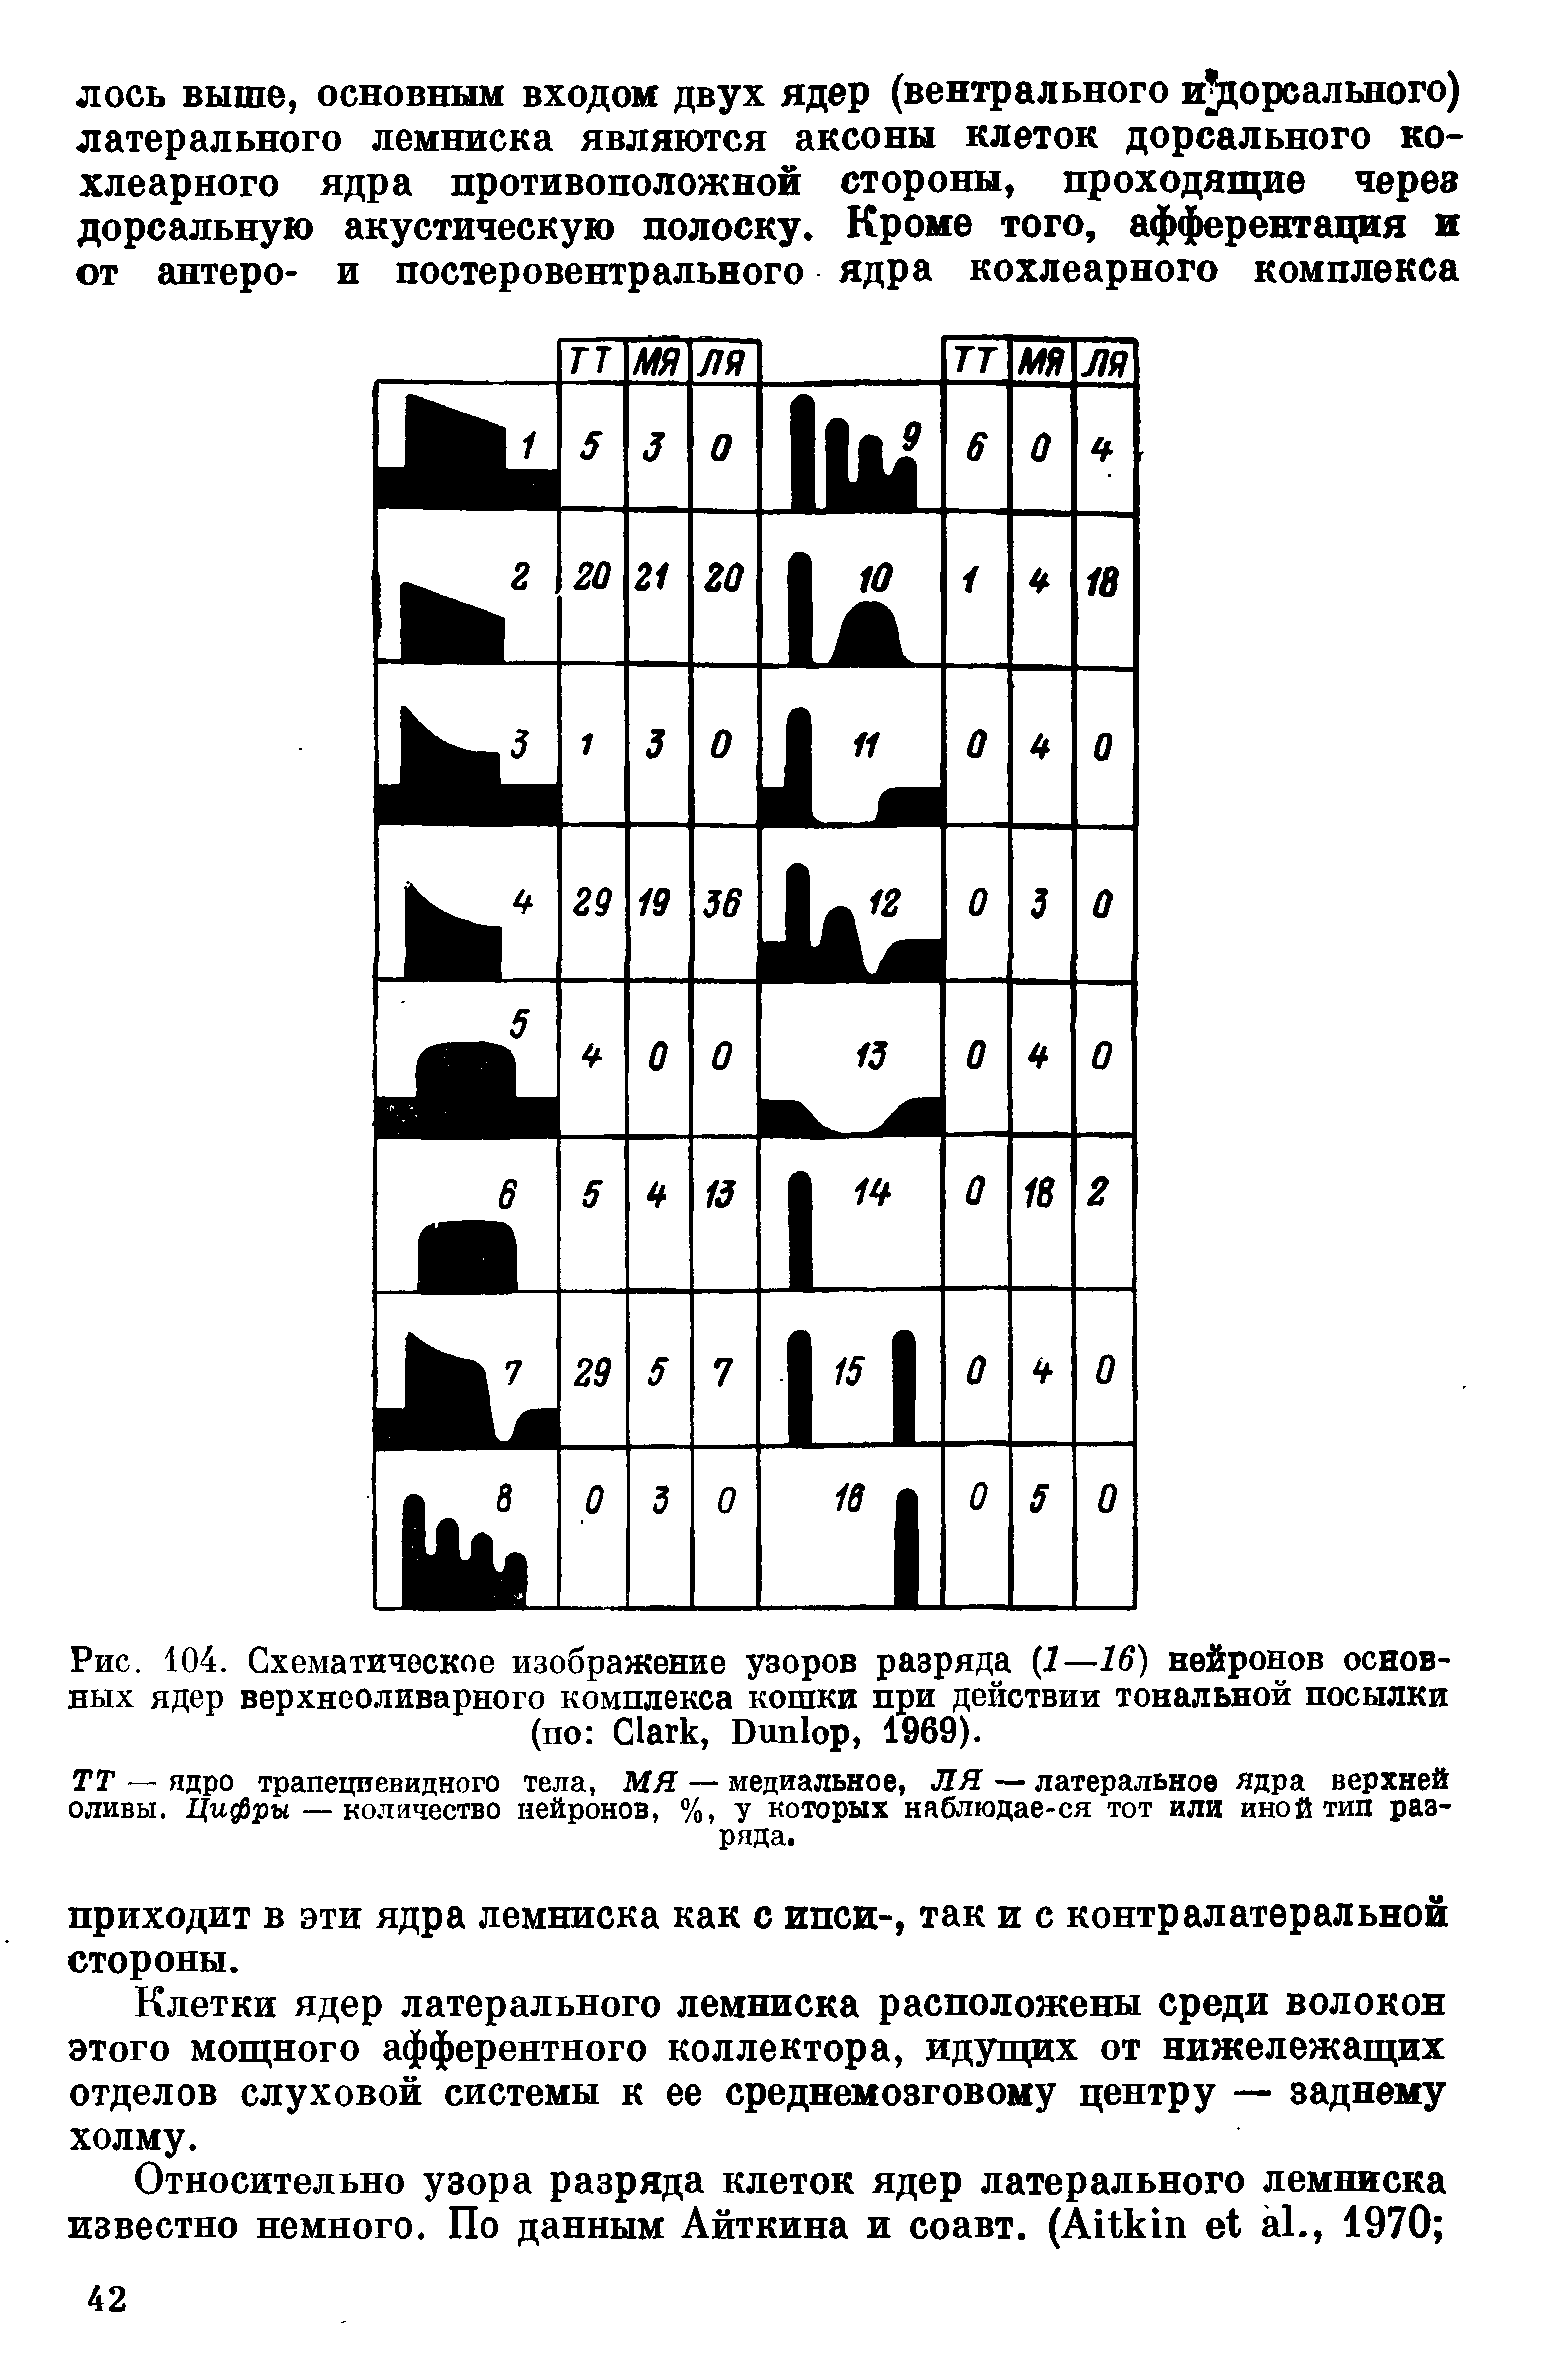 Рис. 104. Схематическое изображение узоров разряда (7—16) нейронов основных ядер верхнеоливарного комплекса кошки при действии тональной посылки (по C , D , 1969).